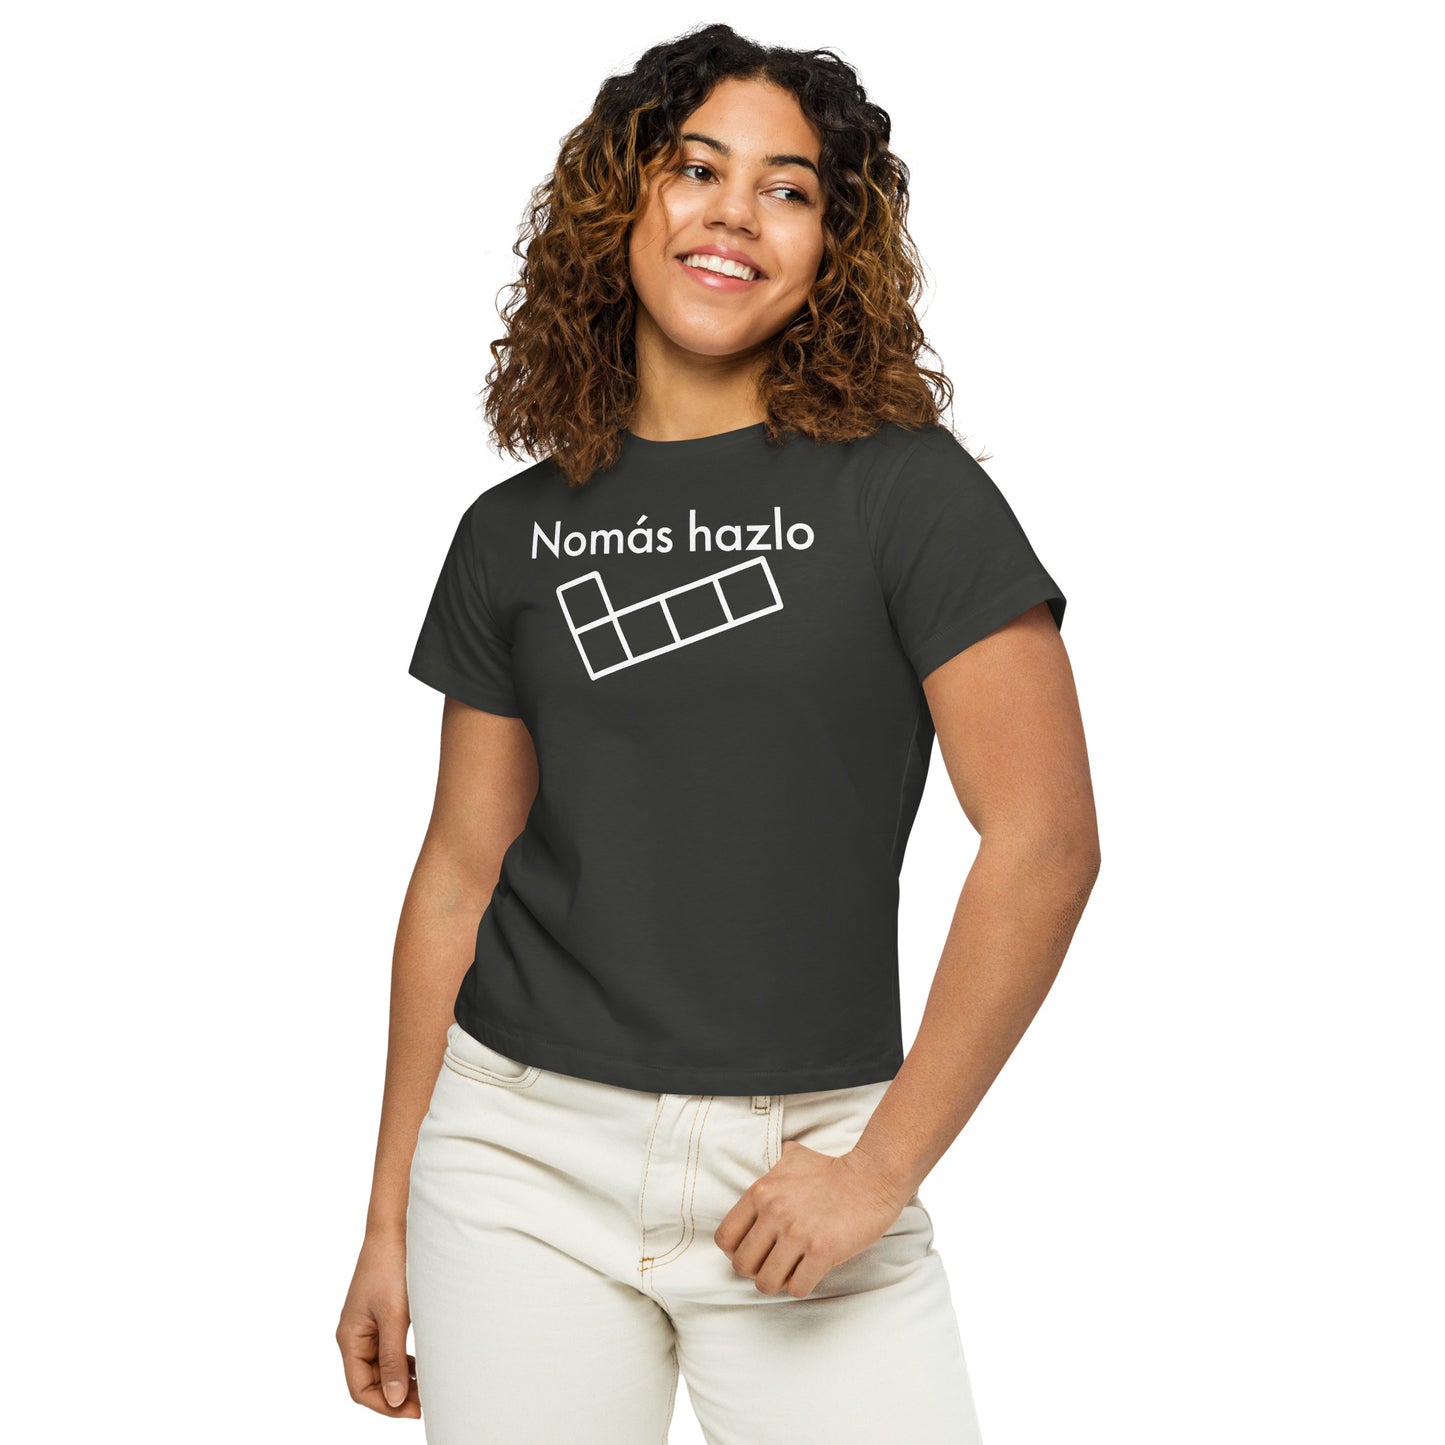 T-shirt para mulher "Just do it"